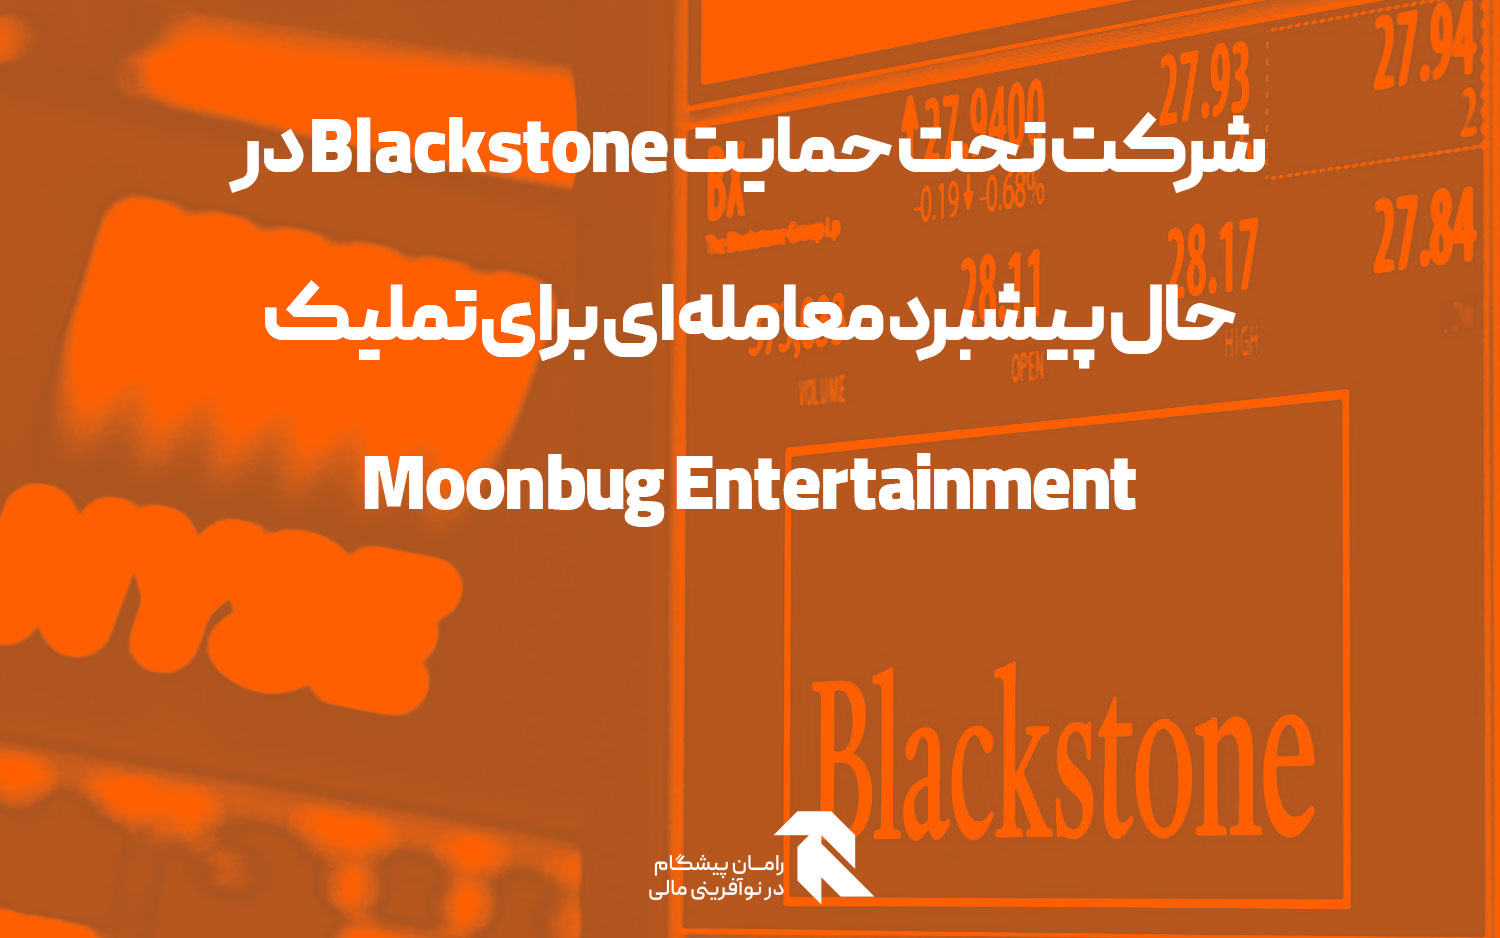 شرکت تحت حمایت Blackstone در حال پیشبرد معامله ای برای تملیک Moonbug Entertainment